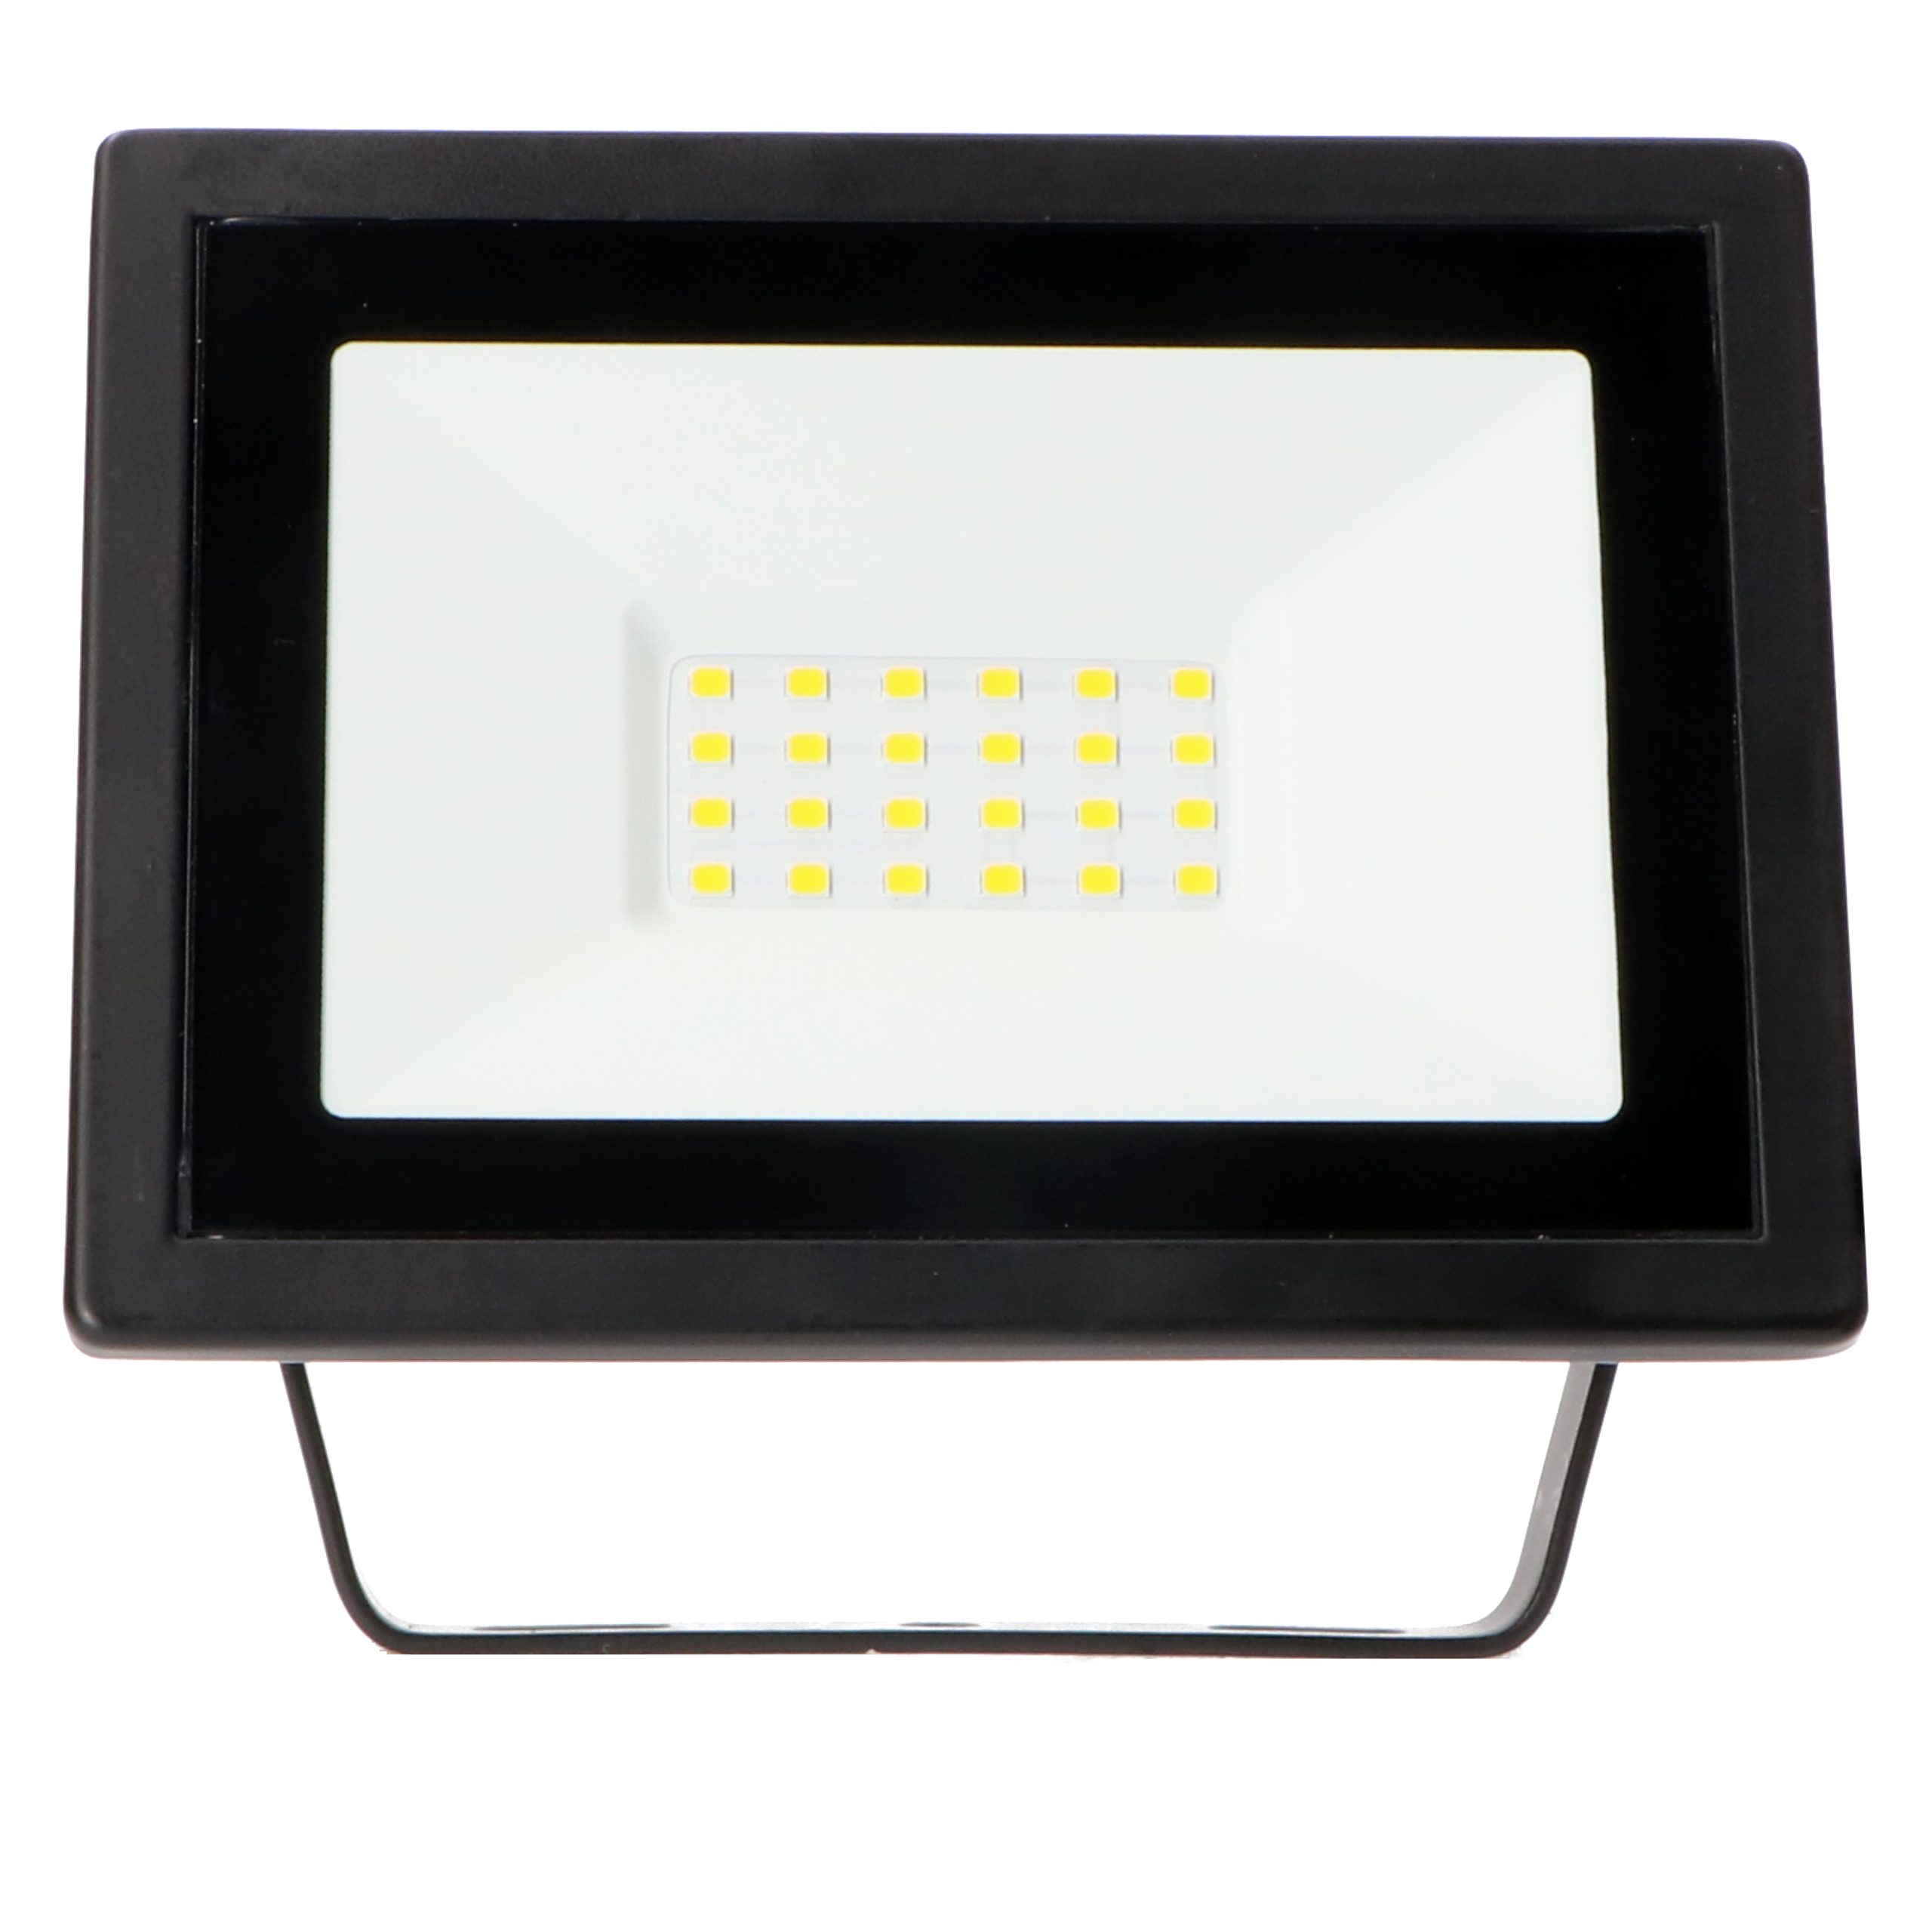 LED's work LED Arbeitsleuchte 0310651 1,2m mit Stativ Zuleitung m LED-Arbeitsstrahler, LED, neutralweiß 20W IP54 2,5